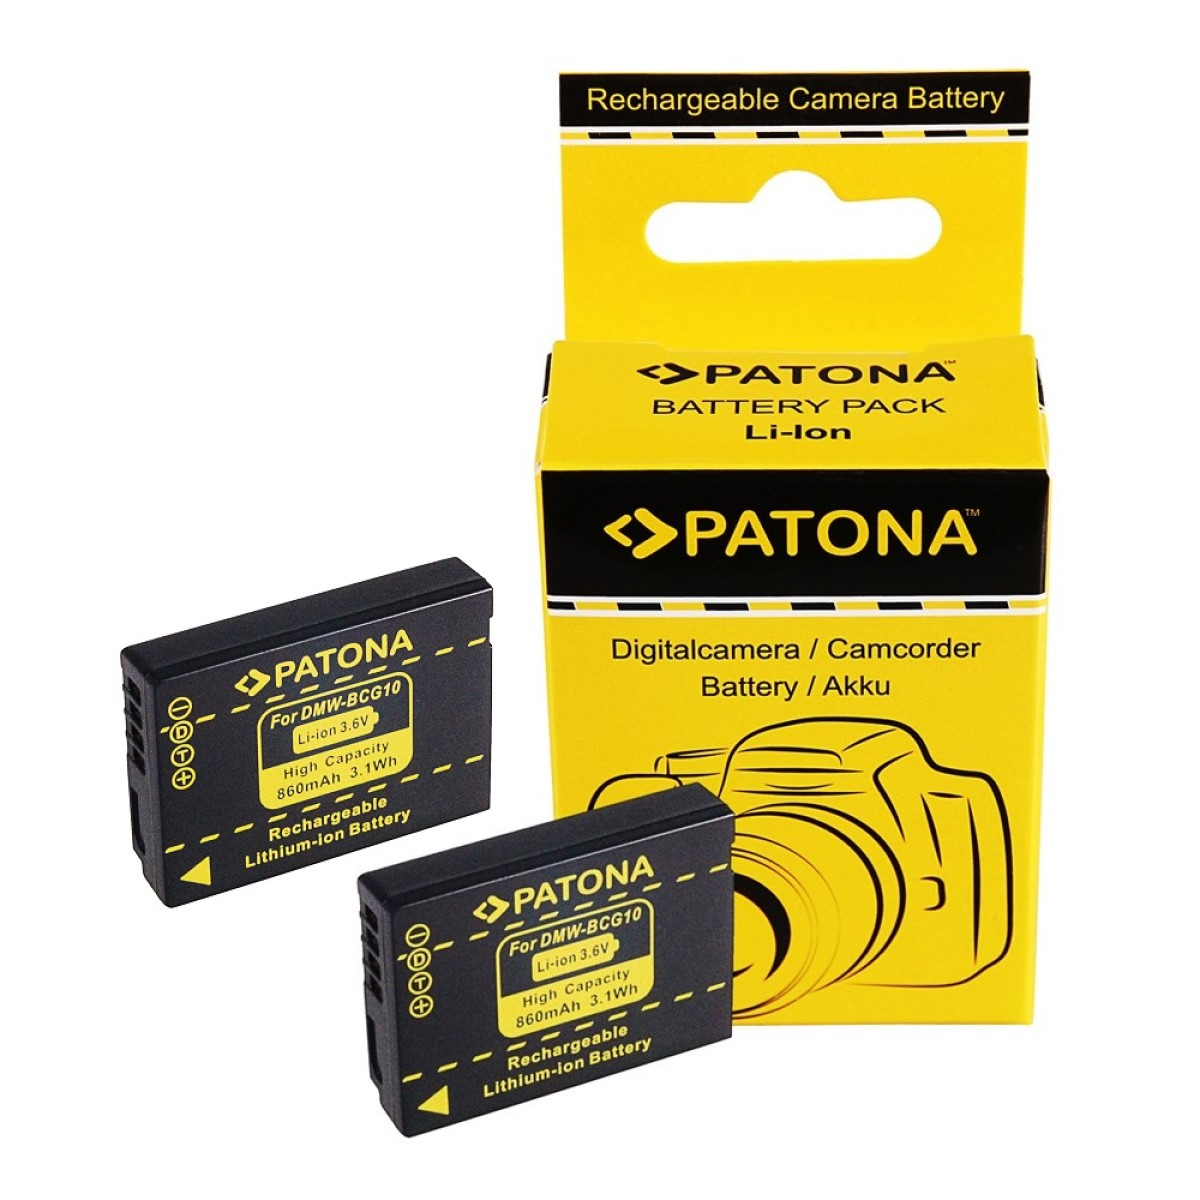 PATONA 2x Akku für kompatibel Stück Panasonic Ersatzakku, 2 Li-Ion DMW-BCG10 860mAh 3.6 Volt